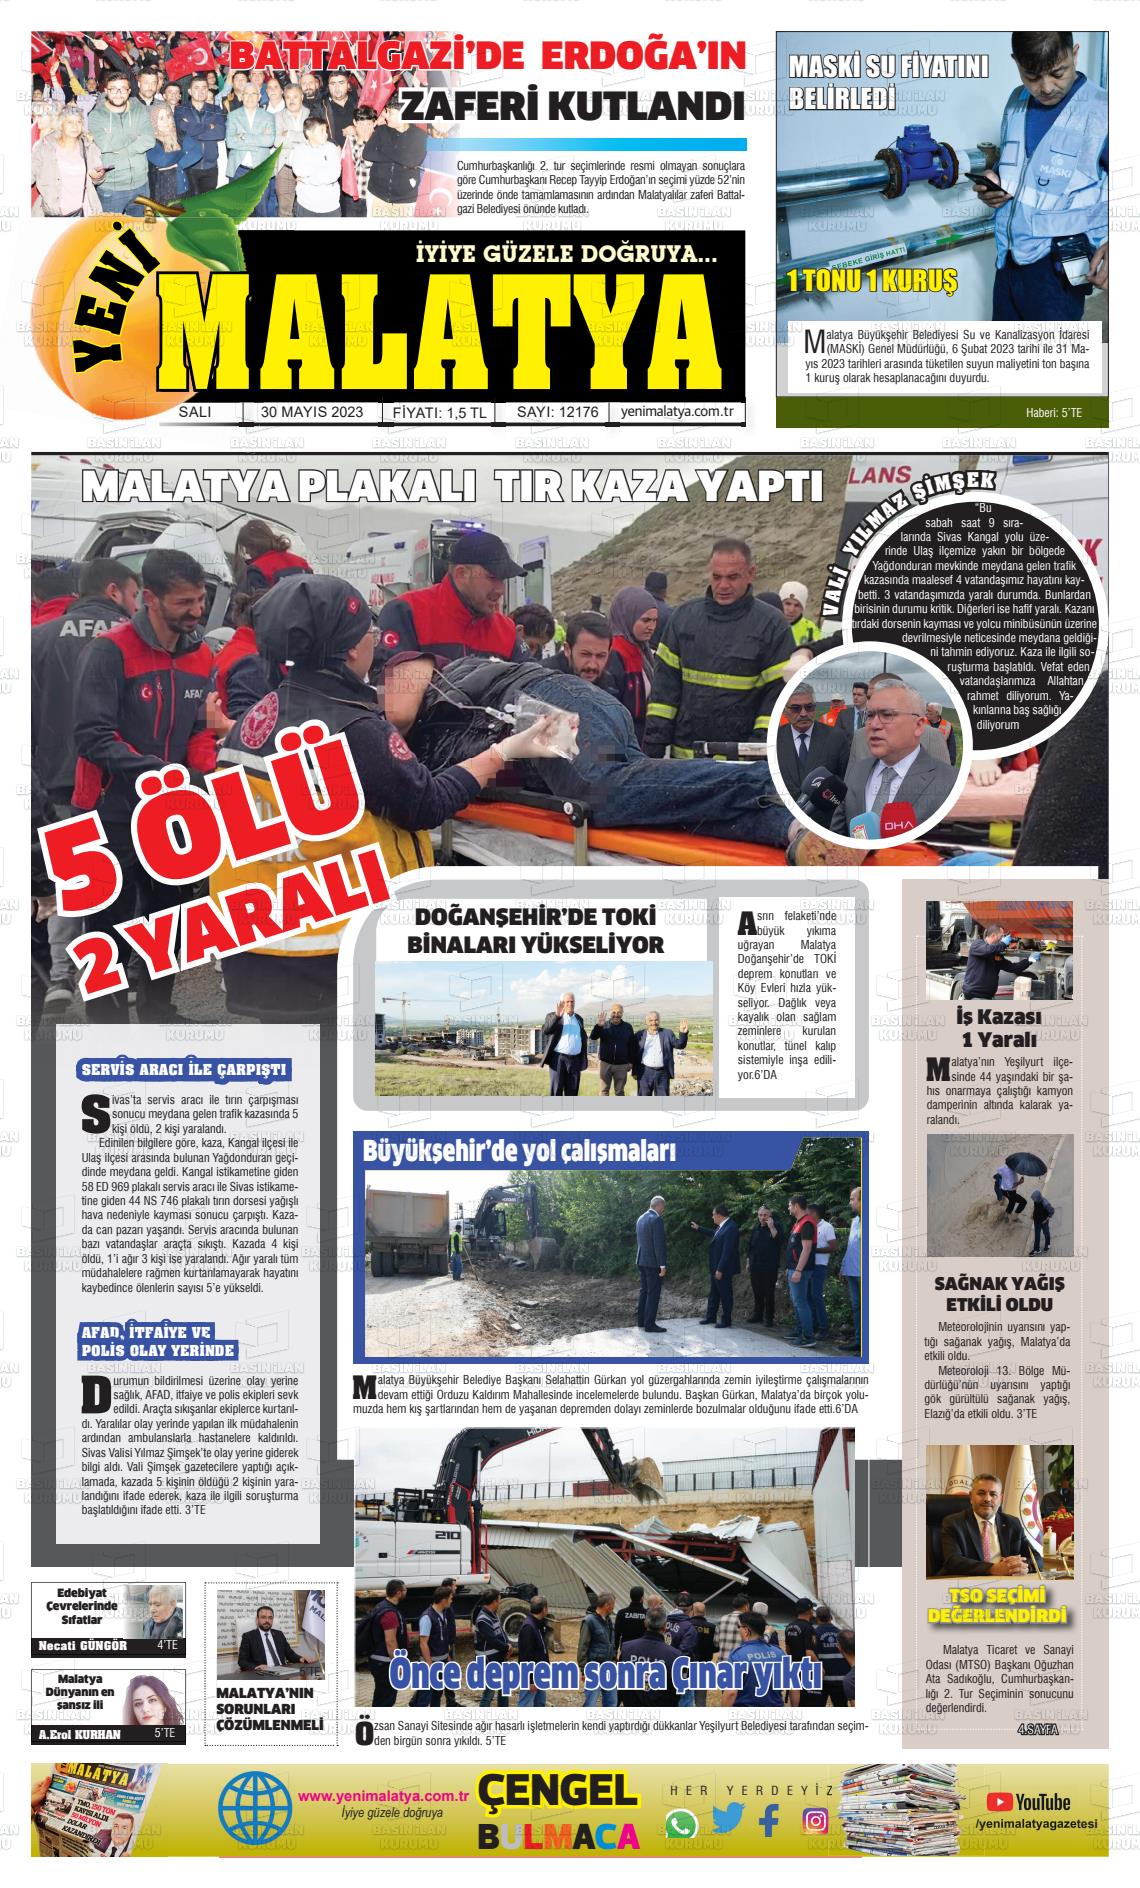 Yeni Malatya gazetesi manşet ilk sayfa oku